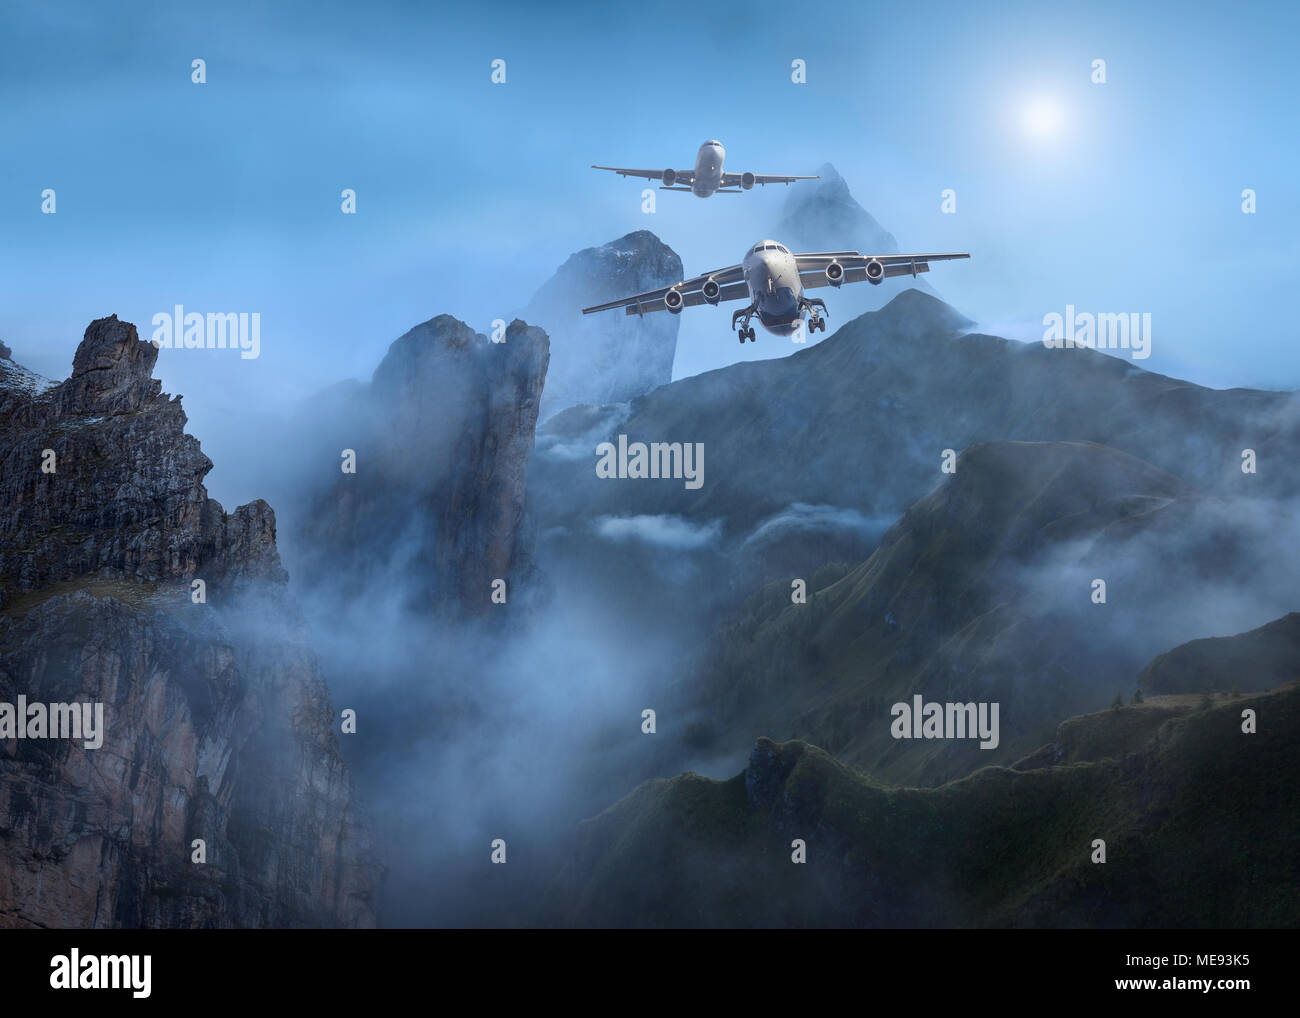 Deux avions de passagers en vol près de la montagne avec des conditions de faible visibilité en temps brumeux. Banque D'Images